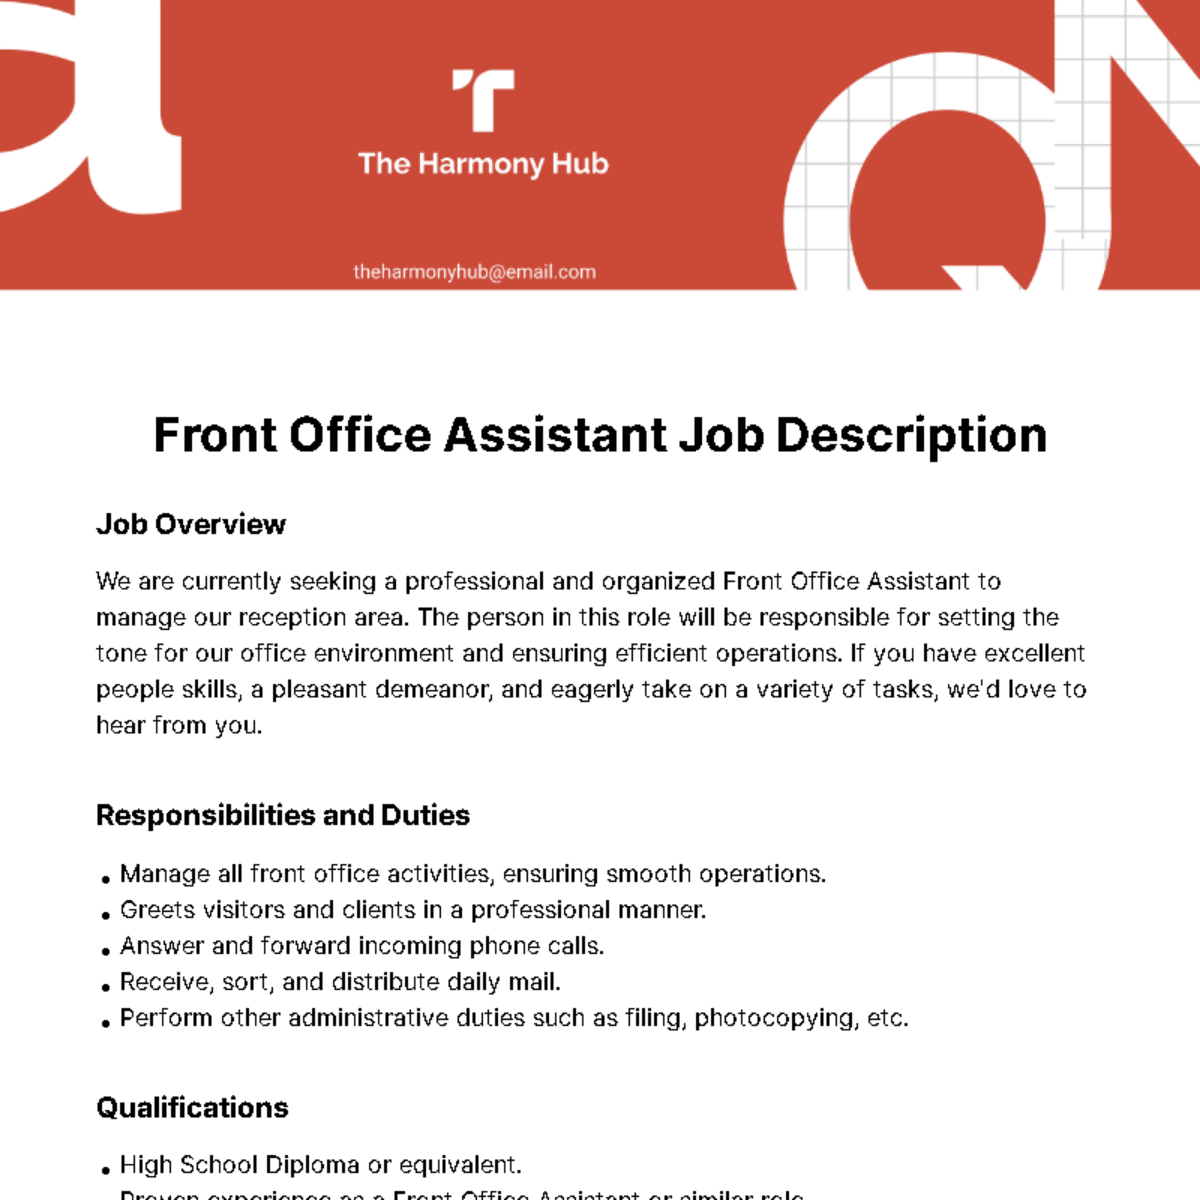 Front Office Assistant Job Description Template